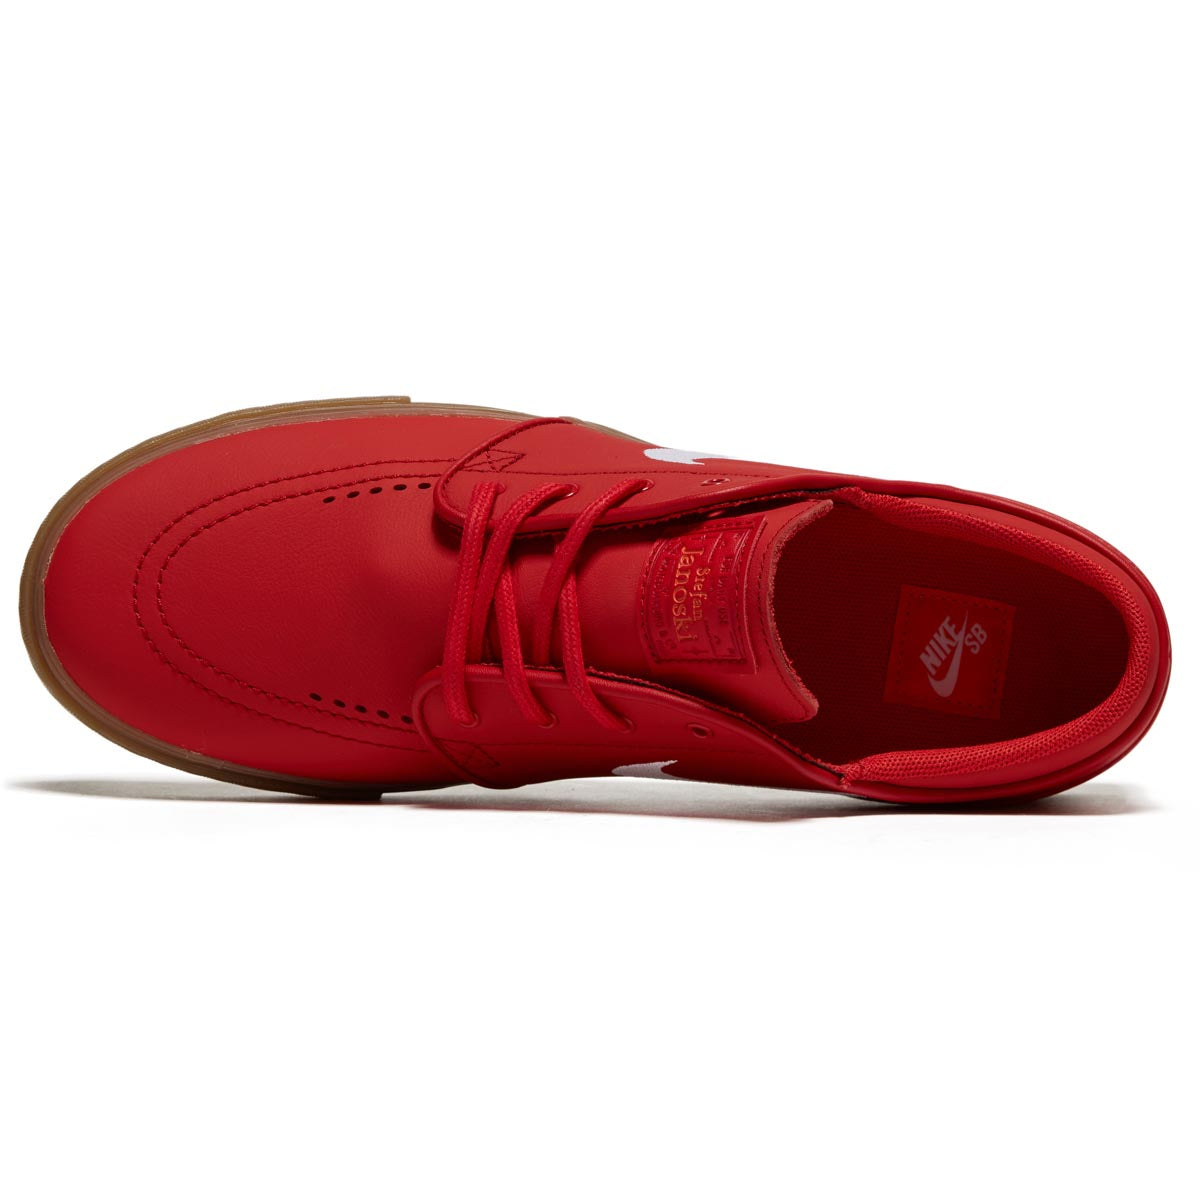 Nike SB Zoom Janoski OG+ Shoes - University Red/White/University Red image 3